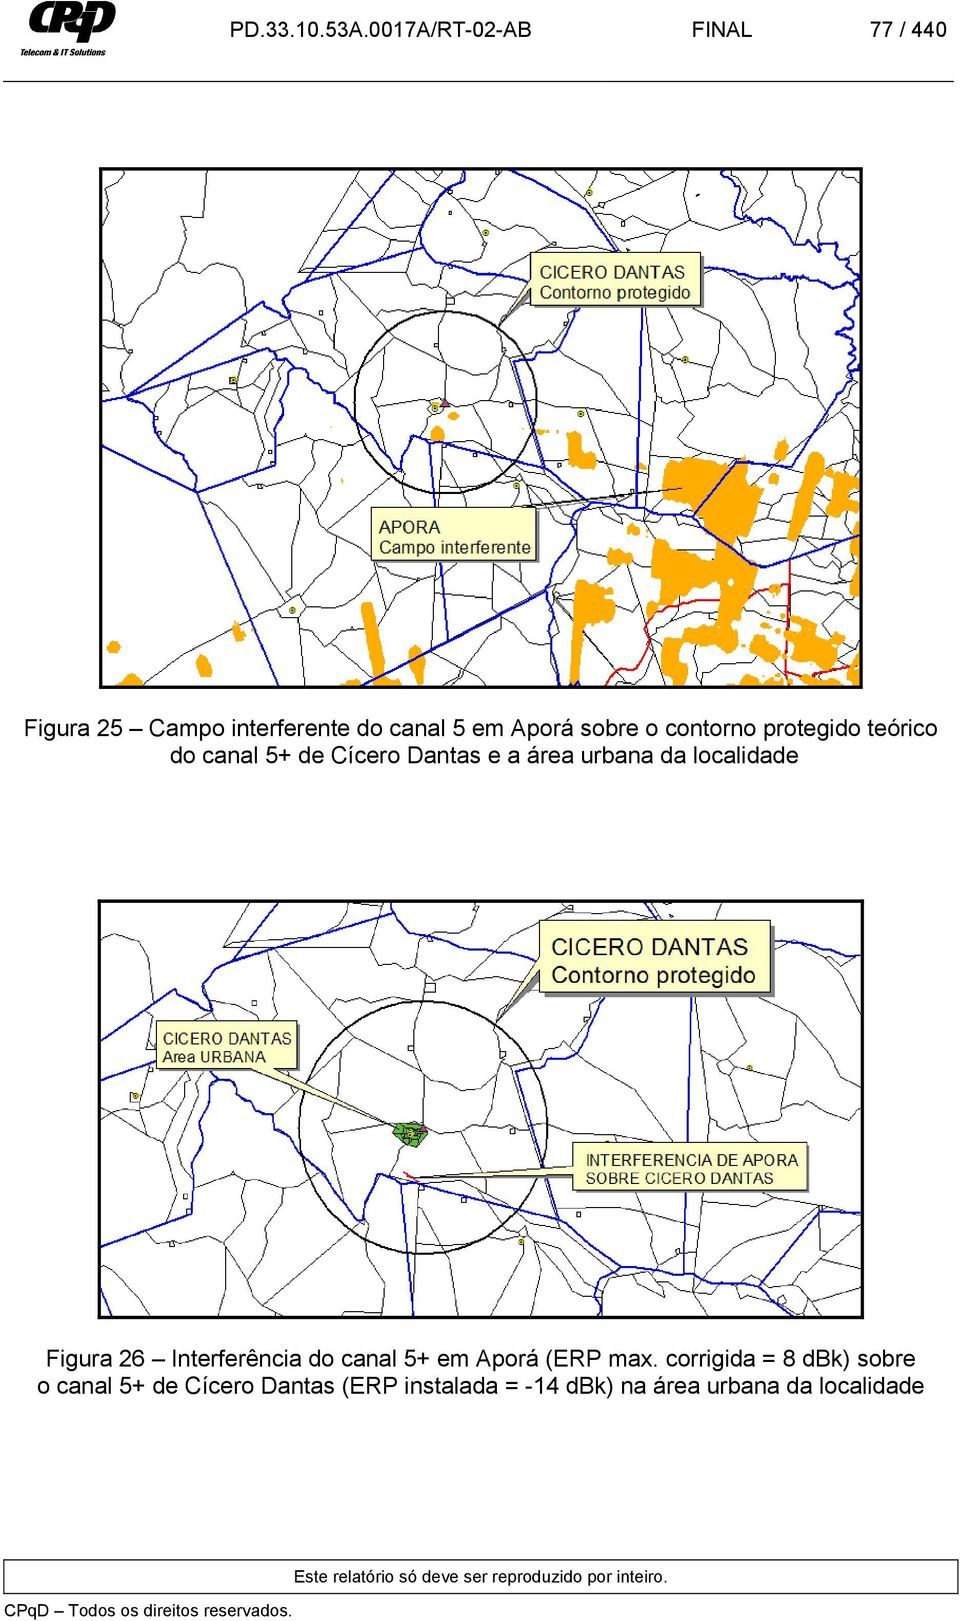 contorno protegido teórico do canal 5+ de Cícero Dantas e a área urbana da localidade